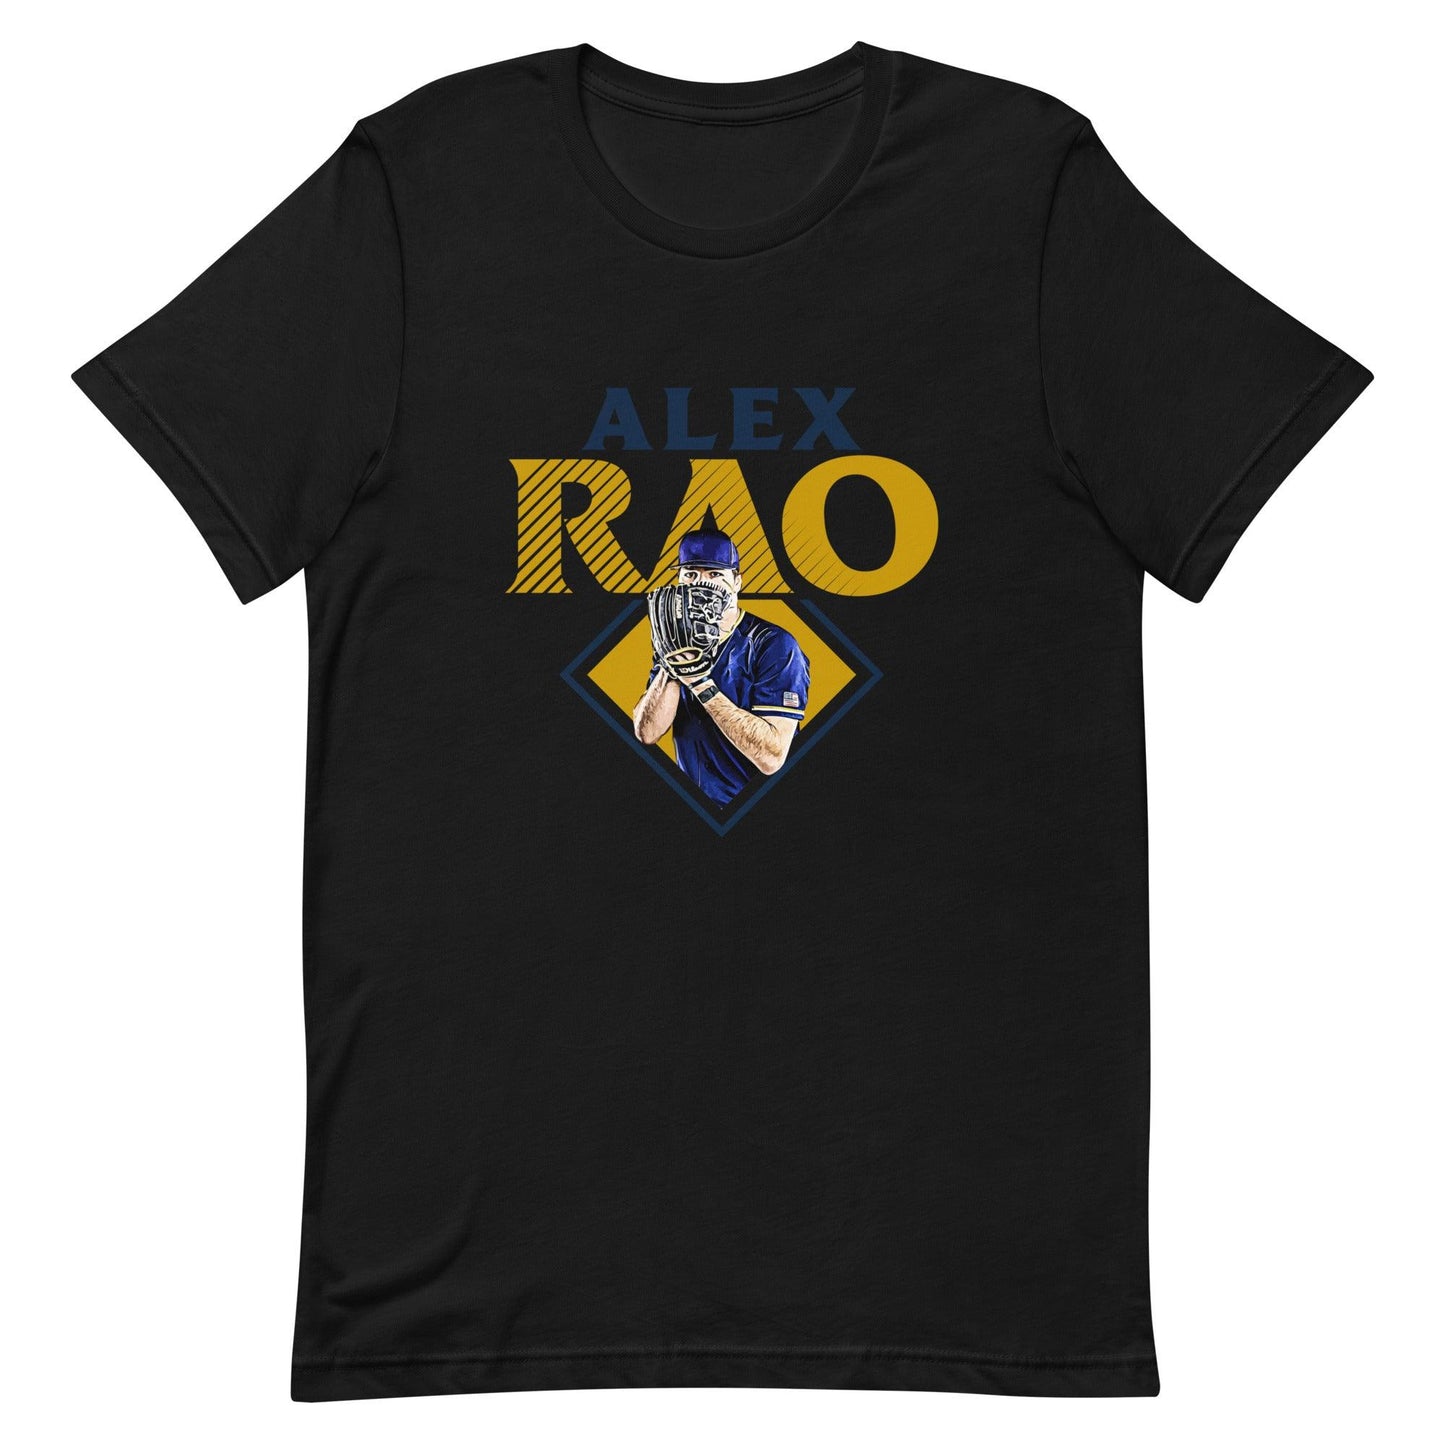 Alex Rao "Essential" t-shirt - Fan Arch